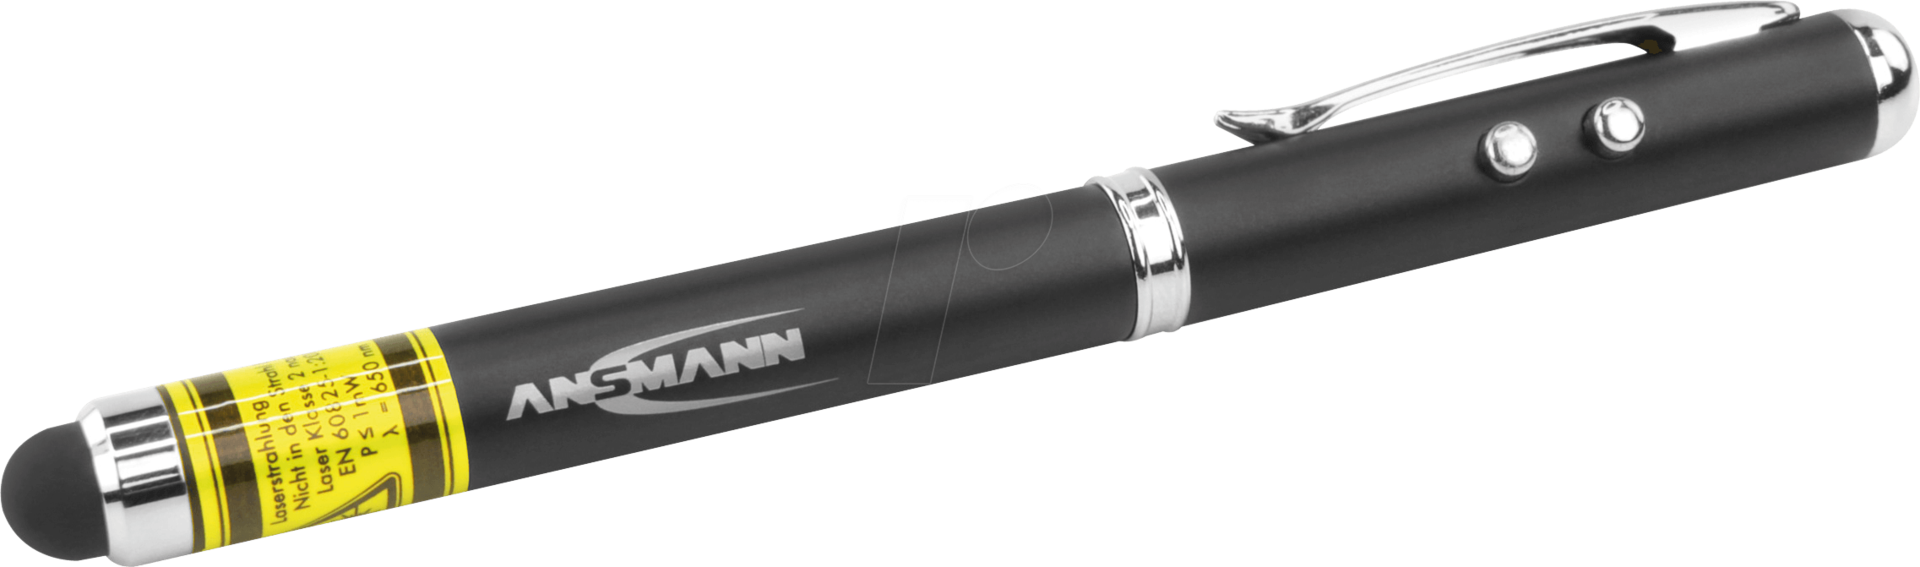 Ansmann Stylus Touch 4in1 Eingabestift Schwarz - Silber 22 g (1600-0271)